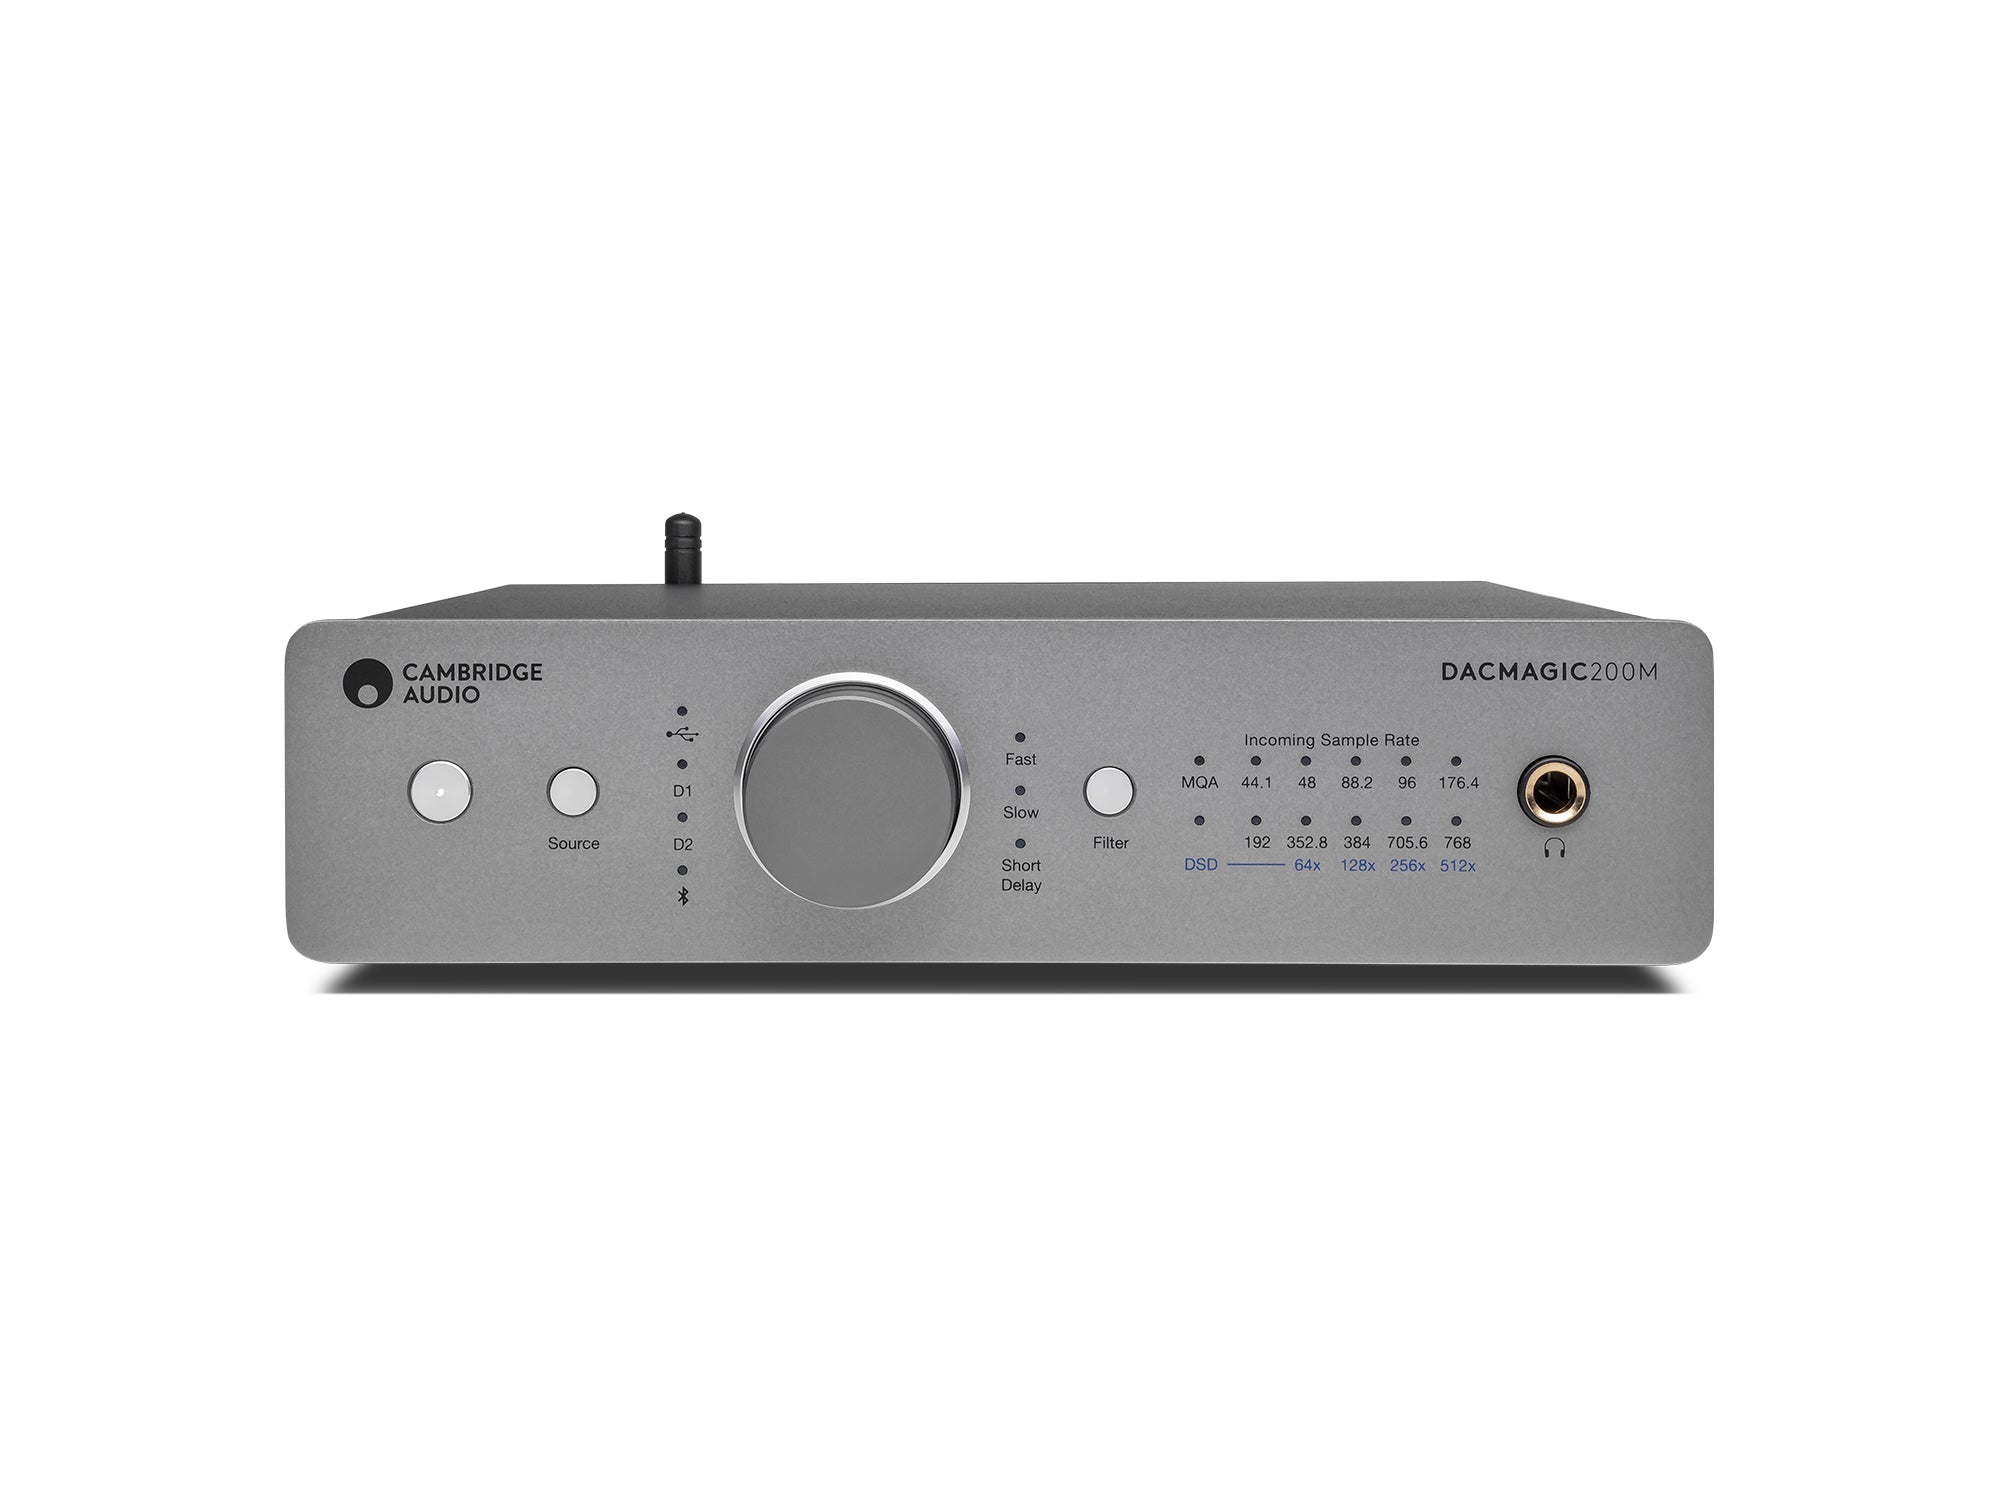 Conversor DAC Dacmagic 200m Cambridge Audio